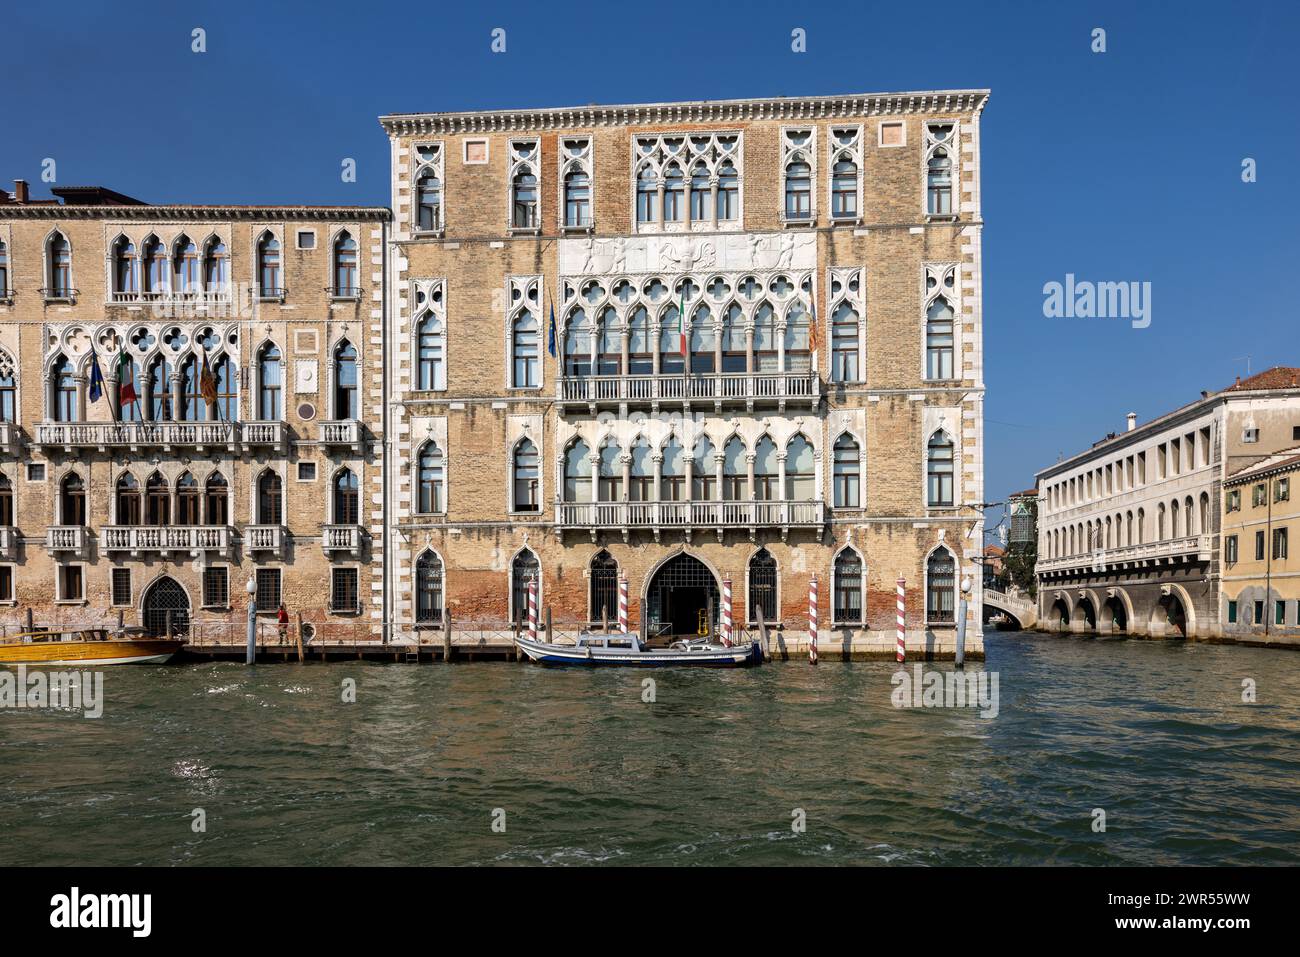 Venise, Italie - 6 septembre 2022 : Palais Ca' Foscari et le palais Giustinien au Grand canal dans le quartier Dorsoduro de Venise, Italie. Banque D'Images